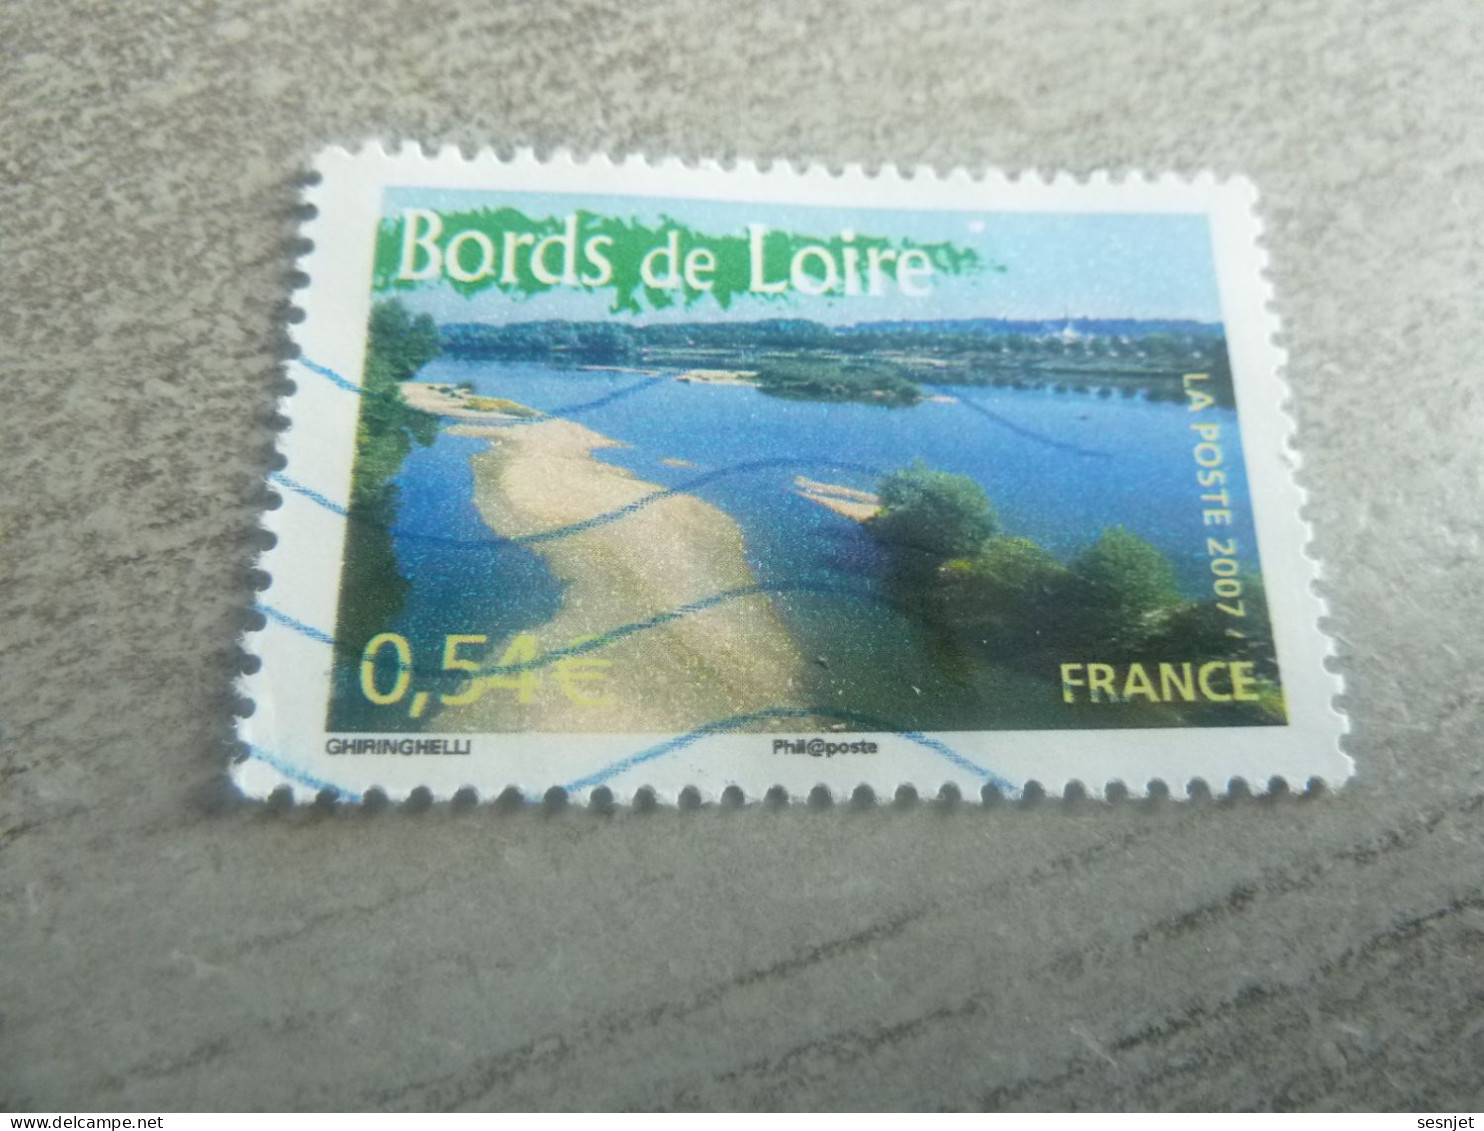 Les Bords De Loire - Portrait De Région - La France à Voir - 0.54 € - Yt 4017 - Multicolore - Oblitéré - Année 2007 - - Gebraucht